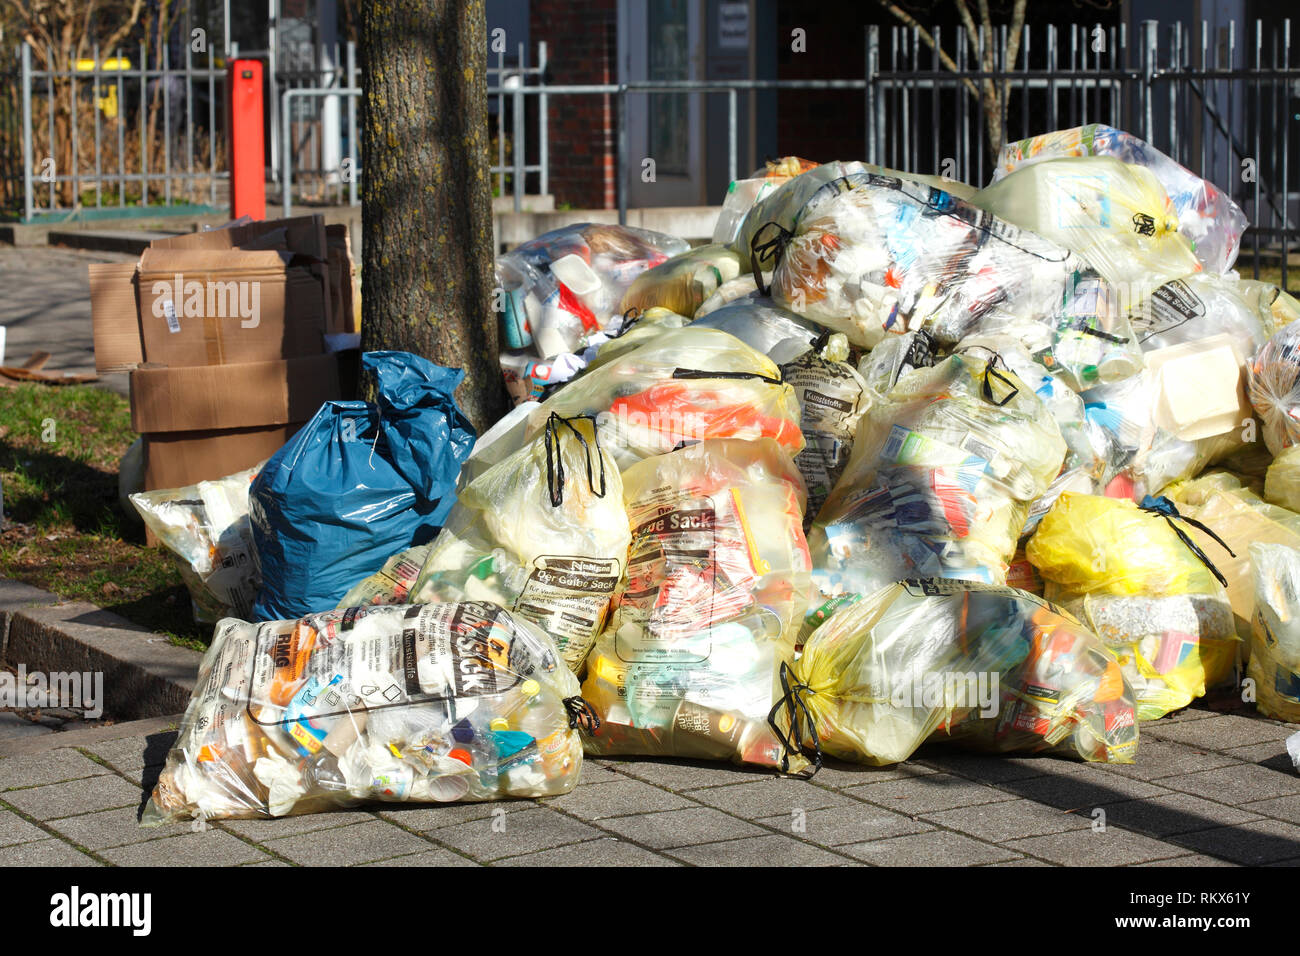 Gestapelte Gelbe Säcke mit Kunststoff Abfall, Mülltrennung